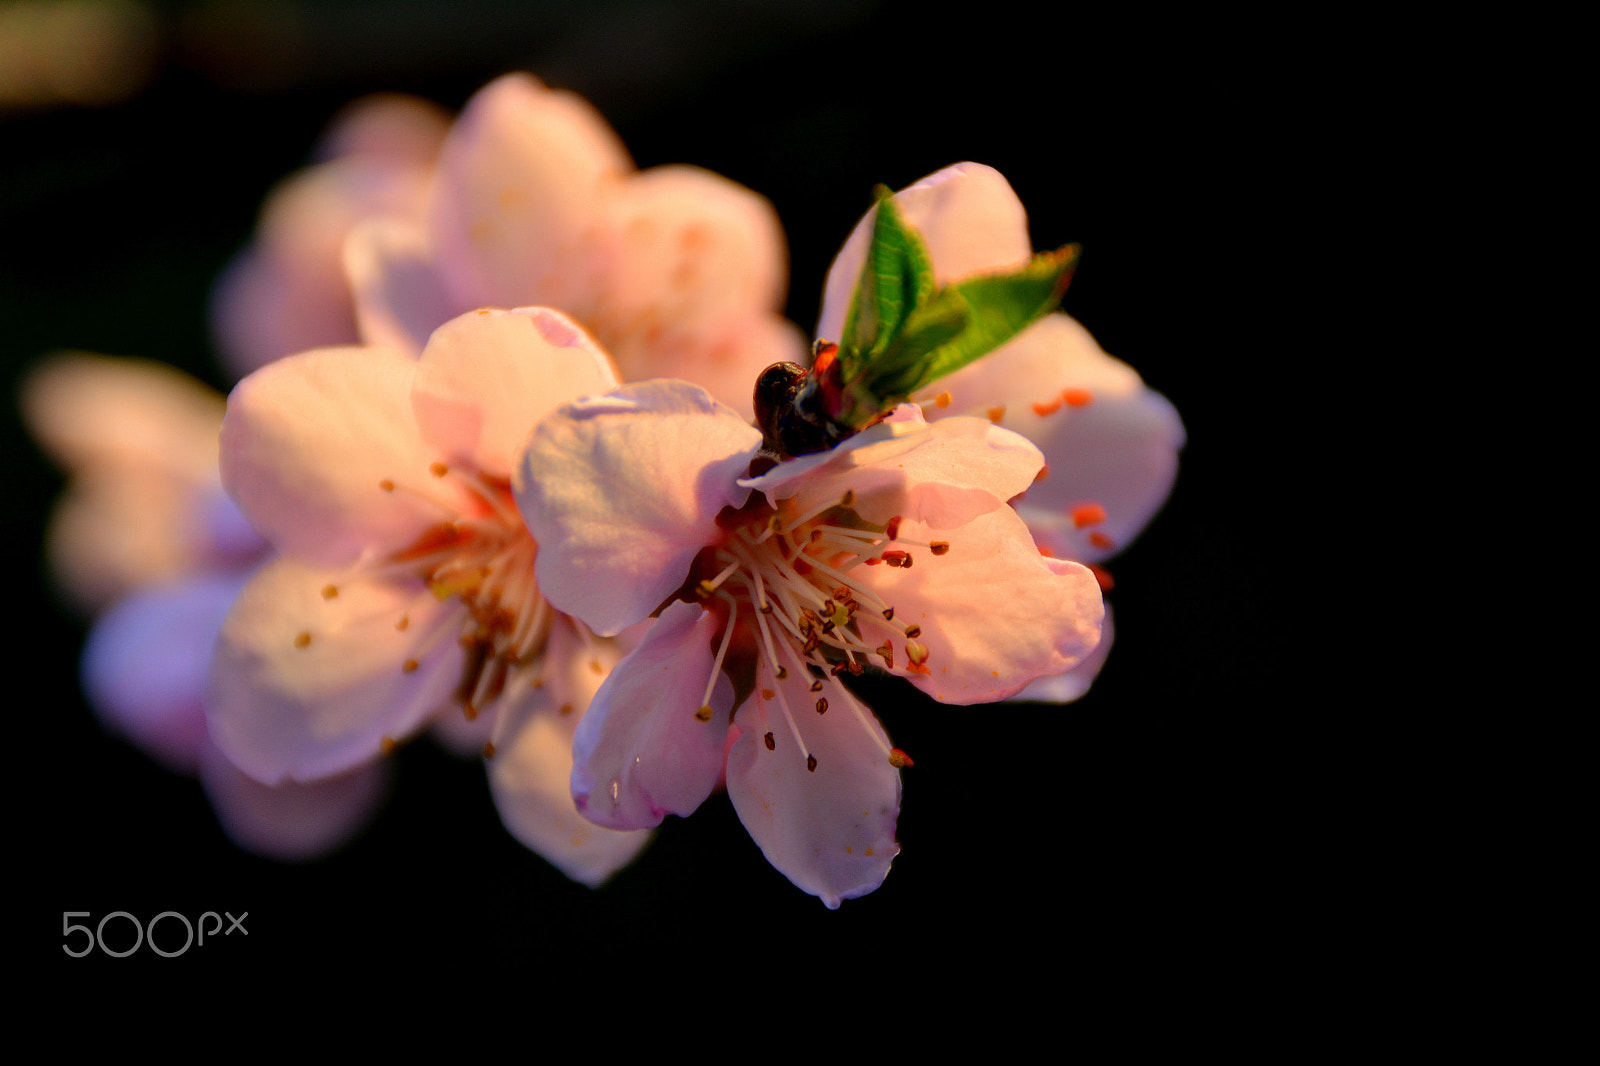 Nikon D5200 sample photo. Peach flower photography